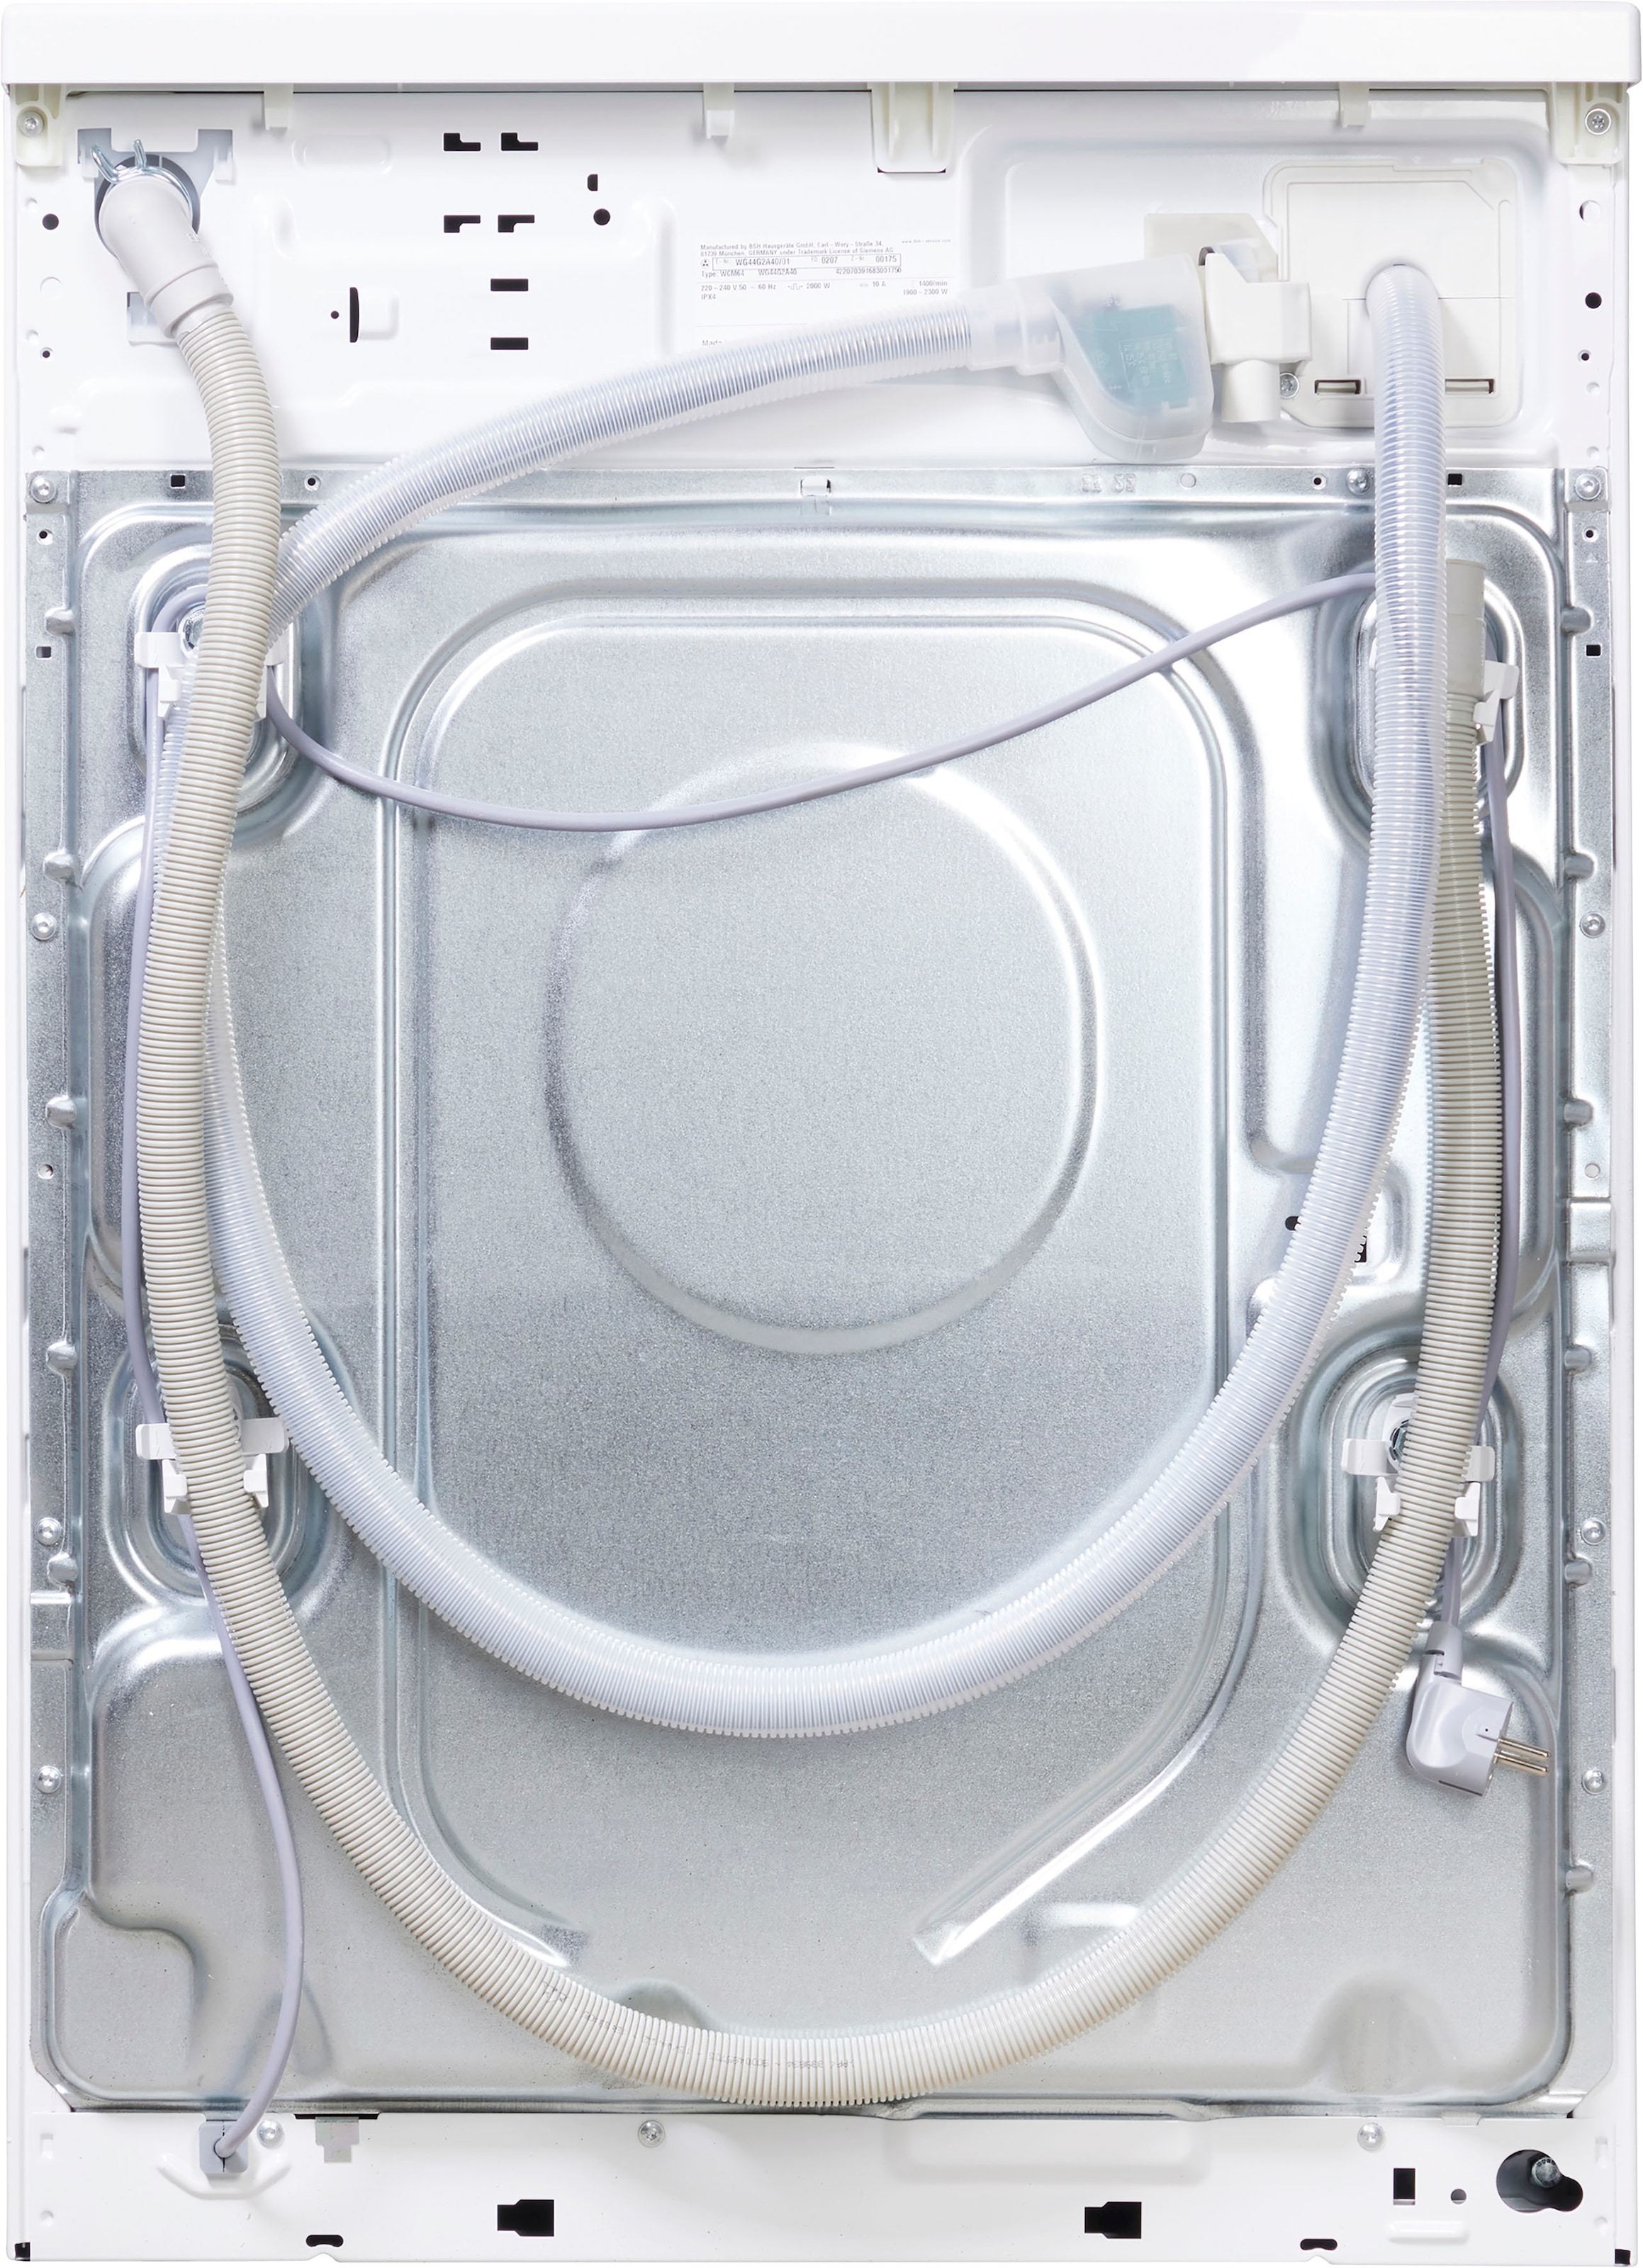 SIEMENS Waschmaschine »WG44G2A40«, WG44G2A40, 9 kg, 1400 U/min, i-Dos -  Dosierautomatik per Raten | BAUR